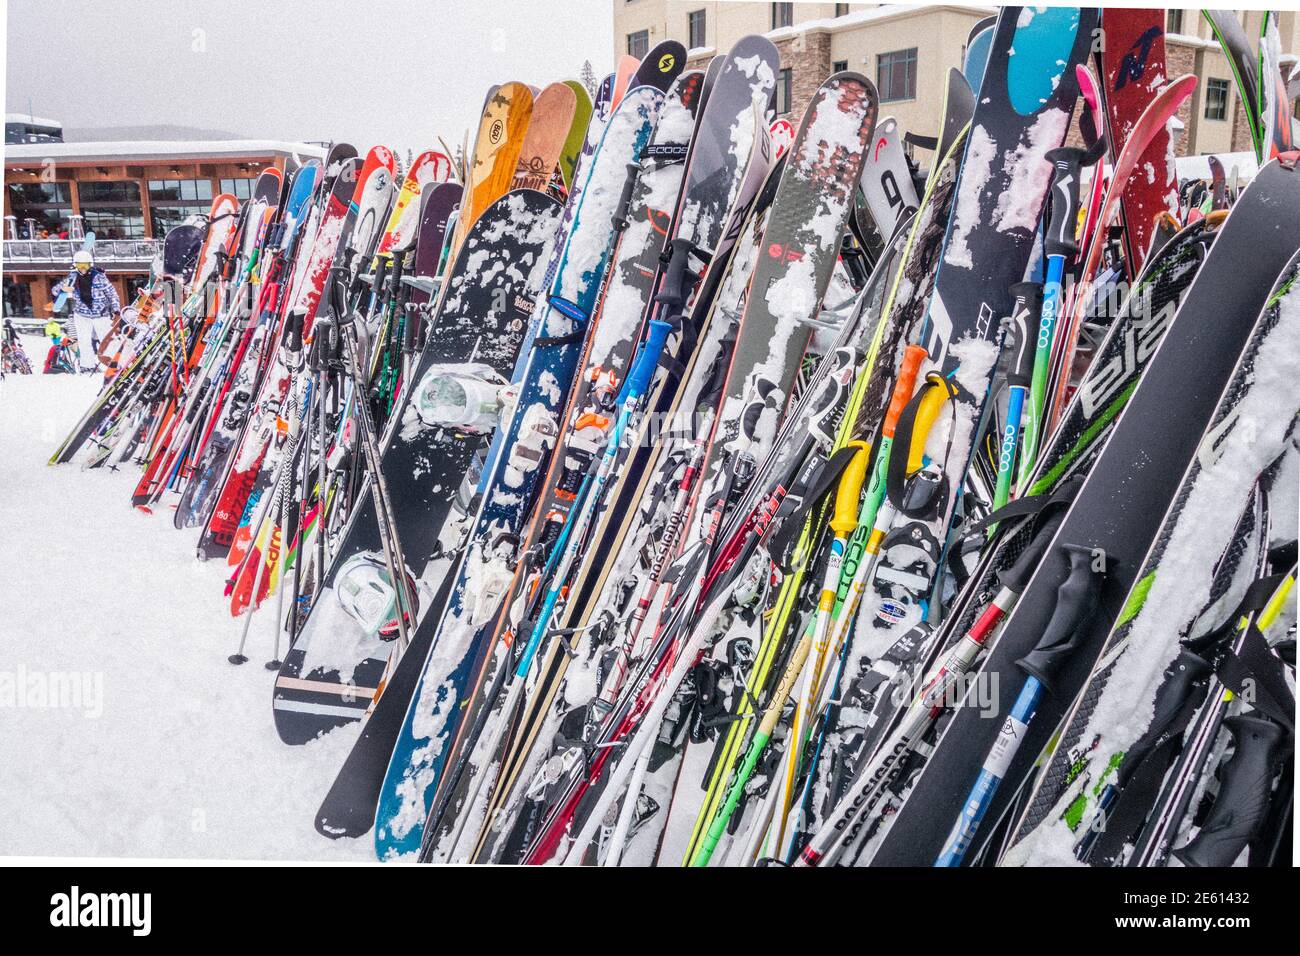 Big Sky, MT, US-Feb 7 2020: Molte coppie di sci sono appoggiate su una rastrelliera in una stazione sciistica in inverno. Foto Stock